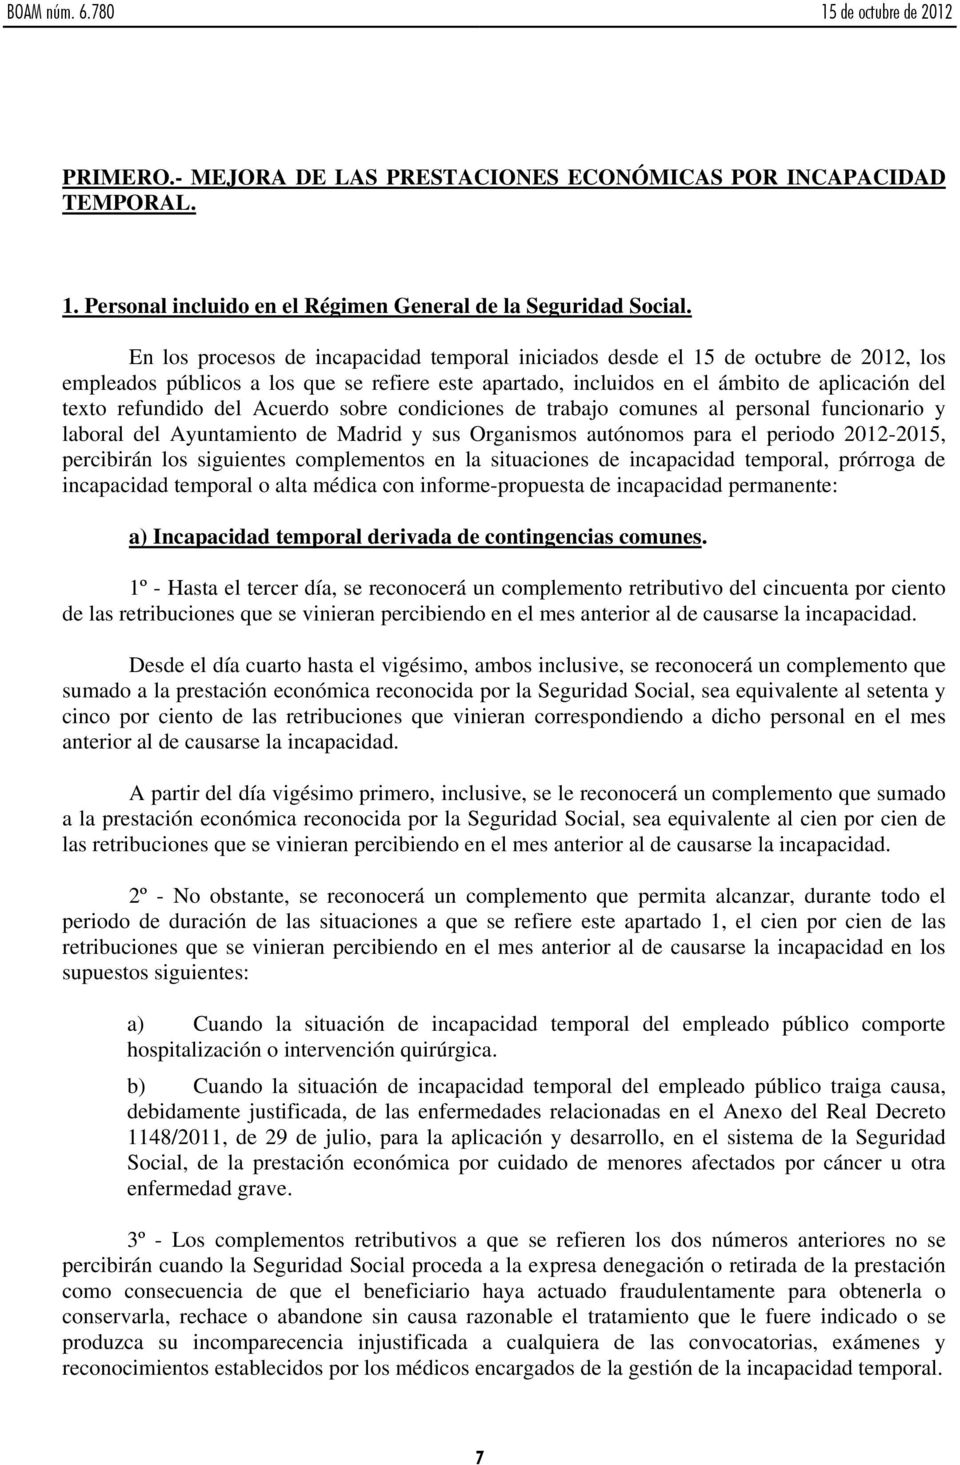 del Acuerdo sobre condiciones de trabajo comunes al personal funcionario y laboral del Ayuntamiento de Madrid y sus Organismos autónomos para el periodo 2012-2015, percibirán los siguientes